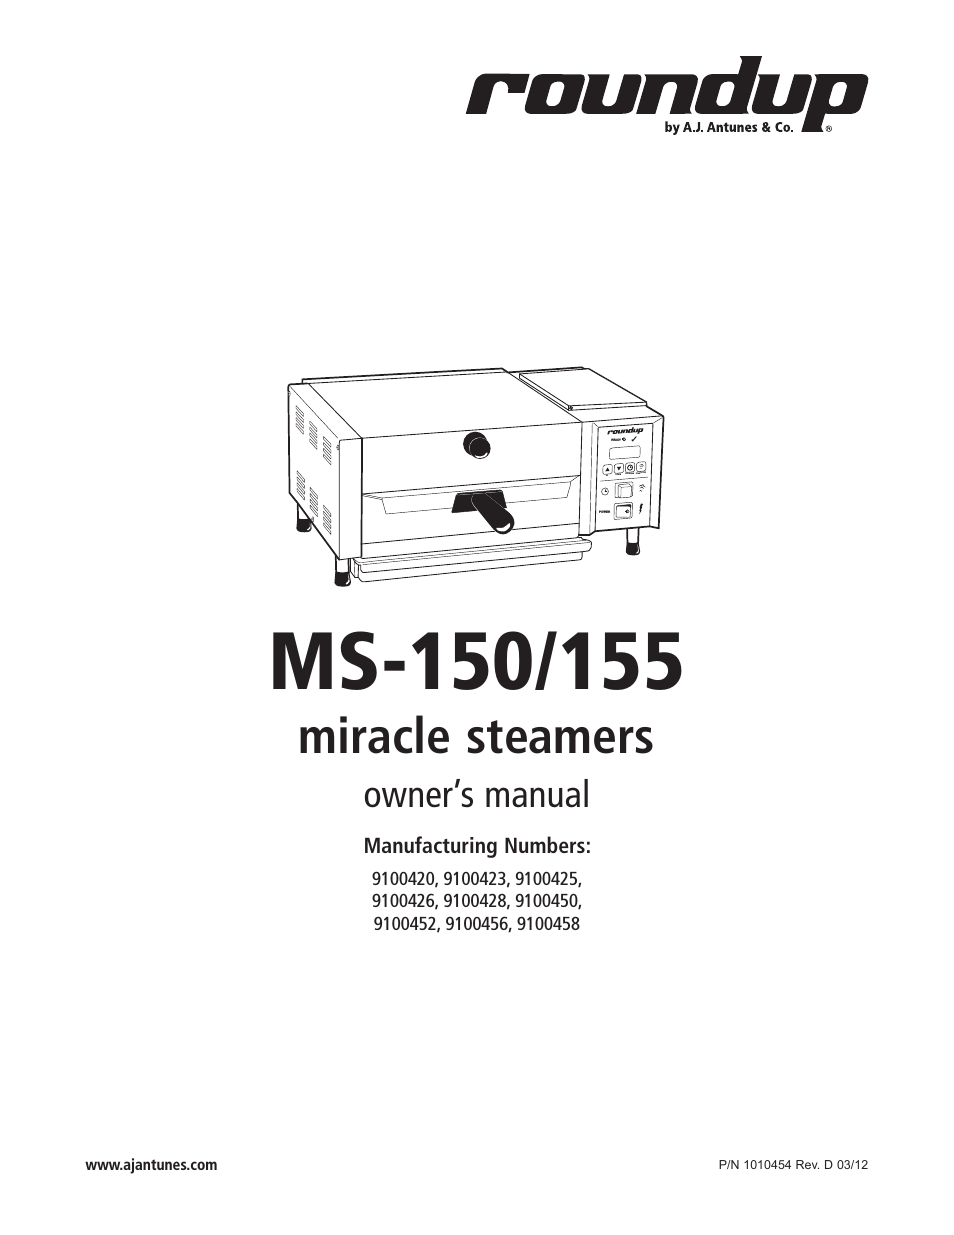 MS-155 9100452